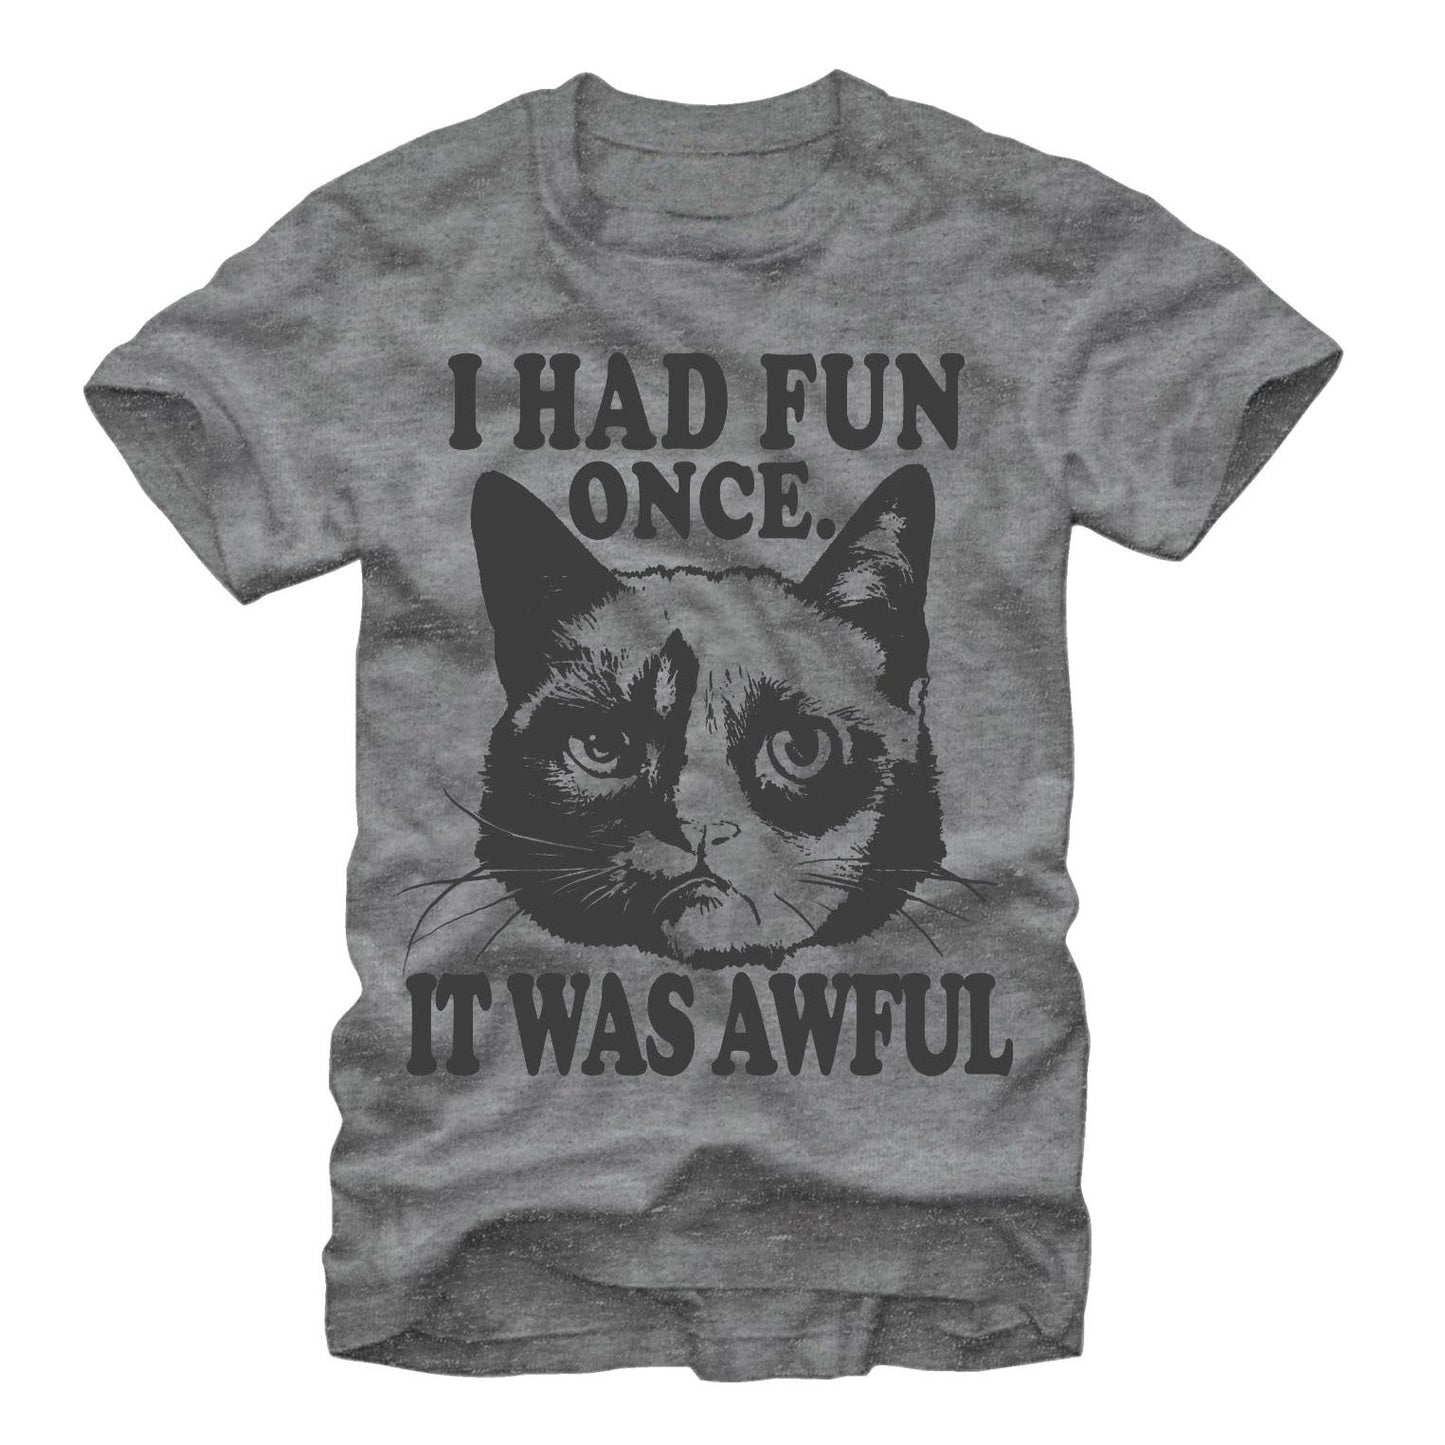 Grumpy Cat "I Had Fun Once" slim fit shirt